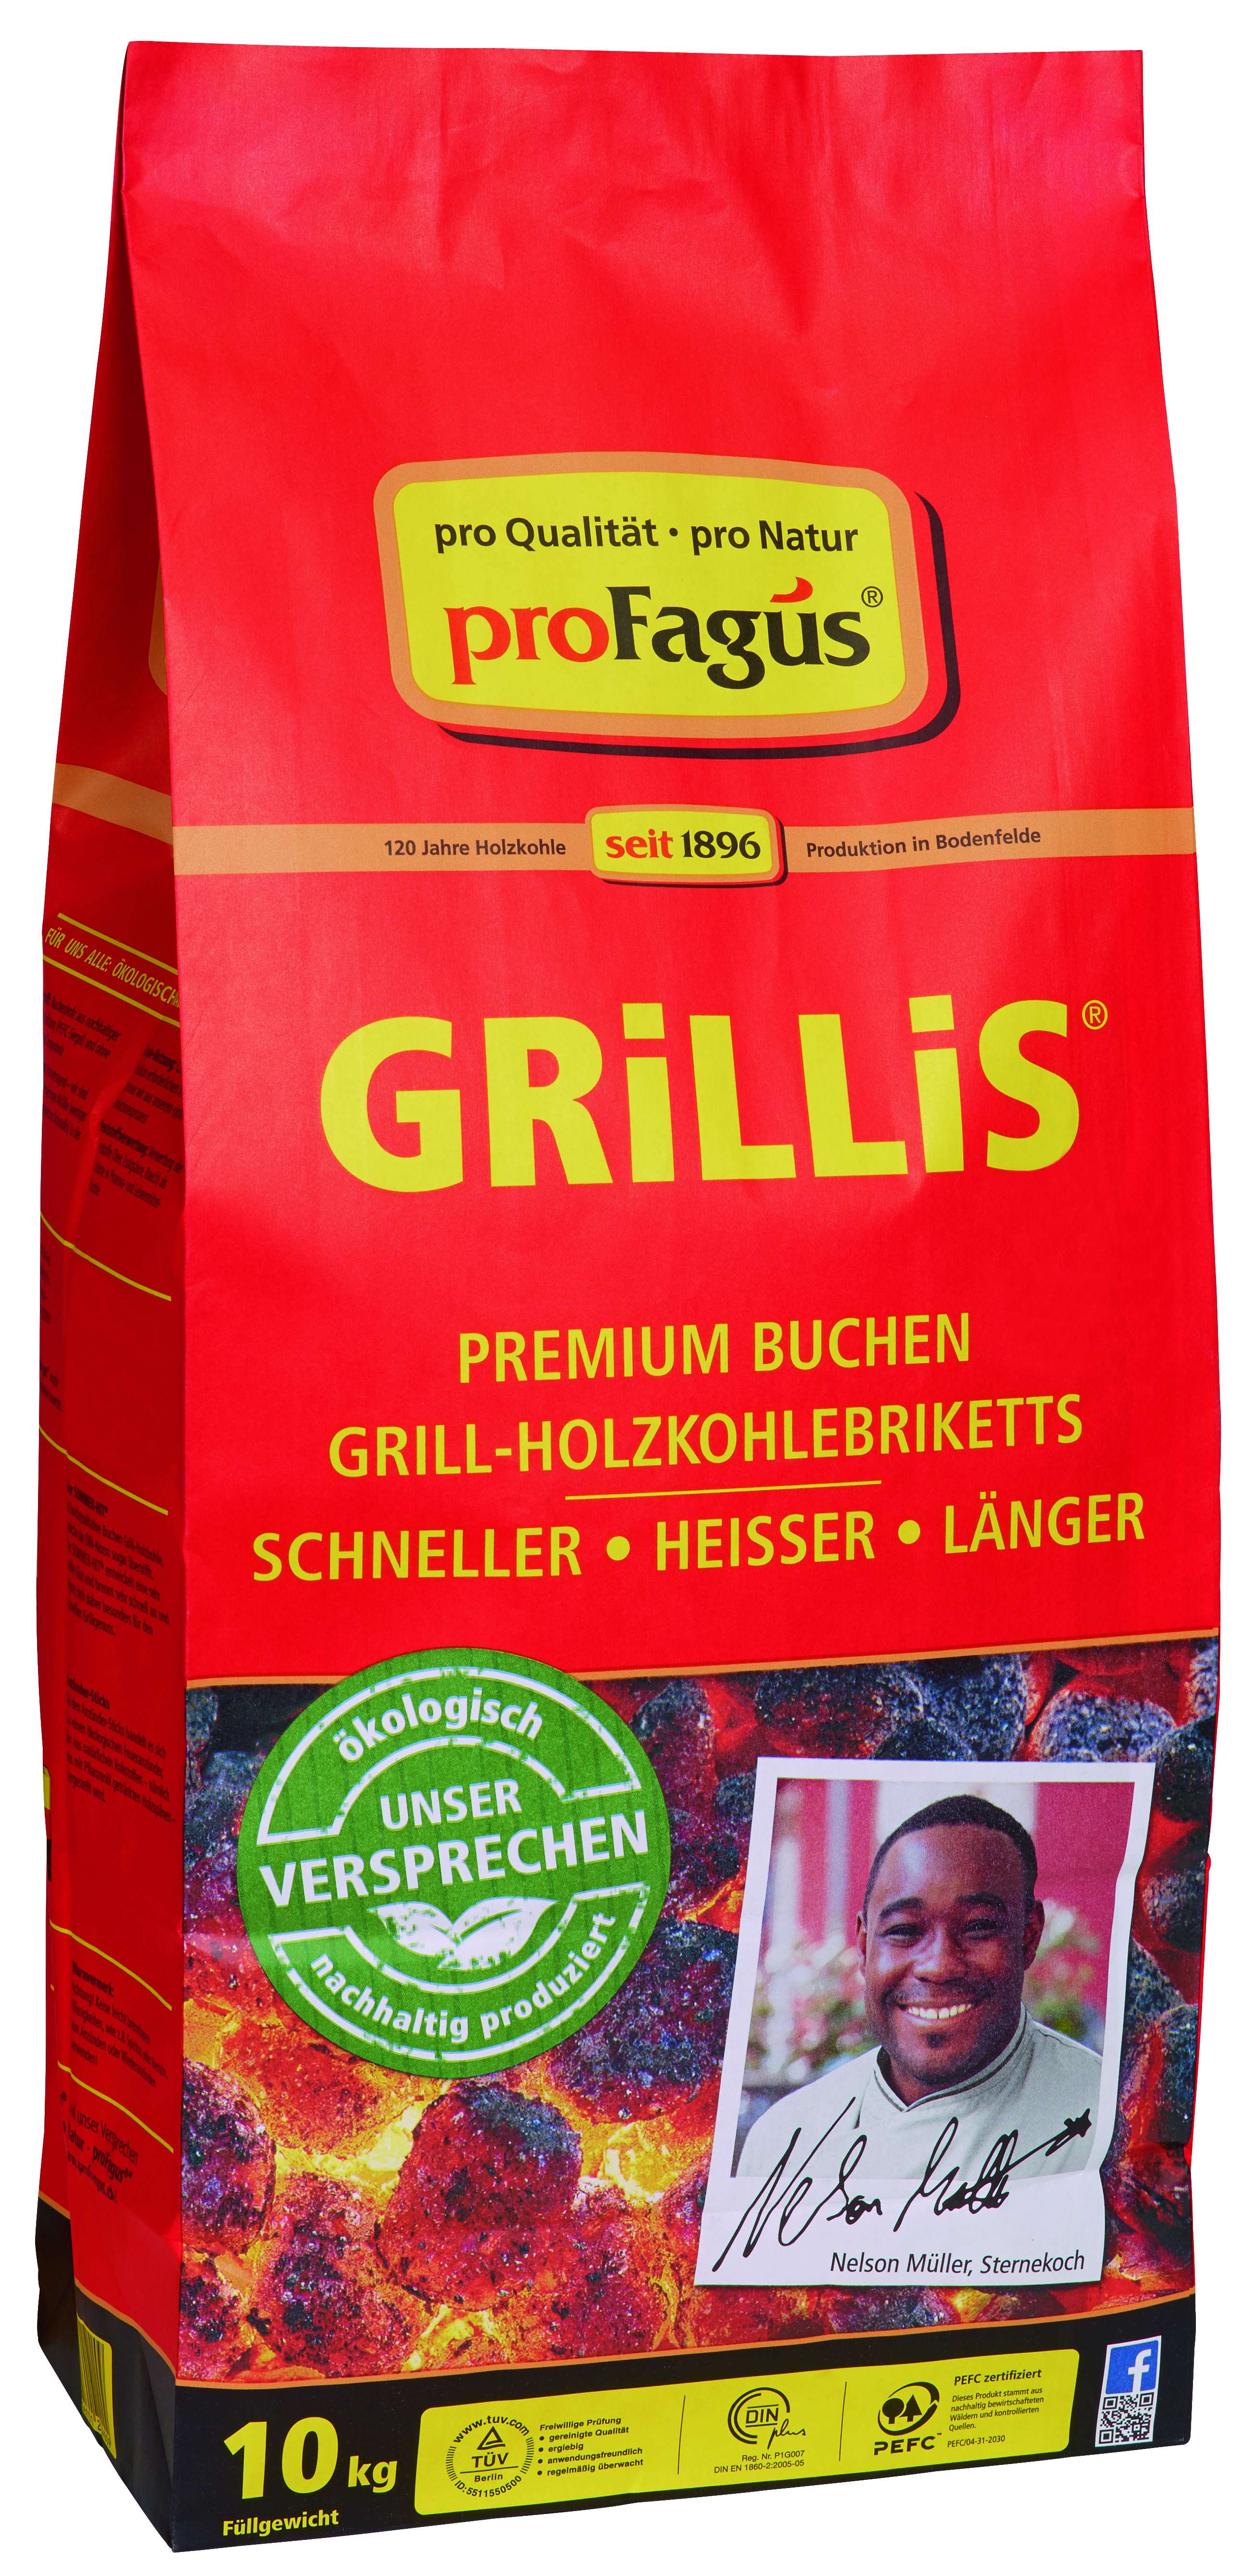 proFagus Grill-Holzkohle Brikkets 10 kg Der Sommer Hit